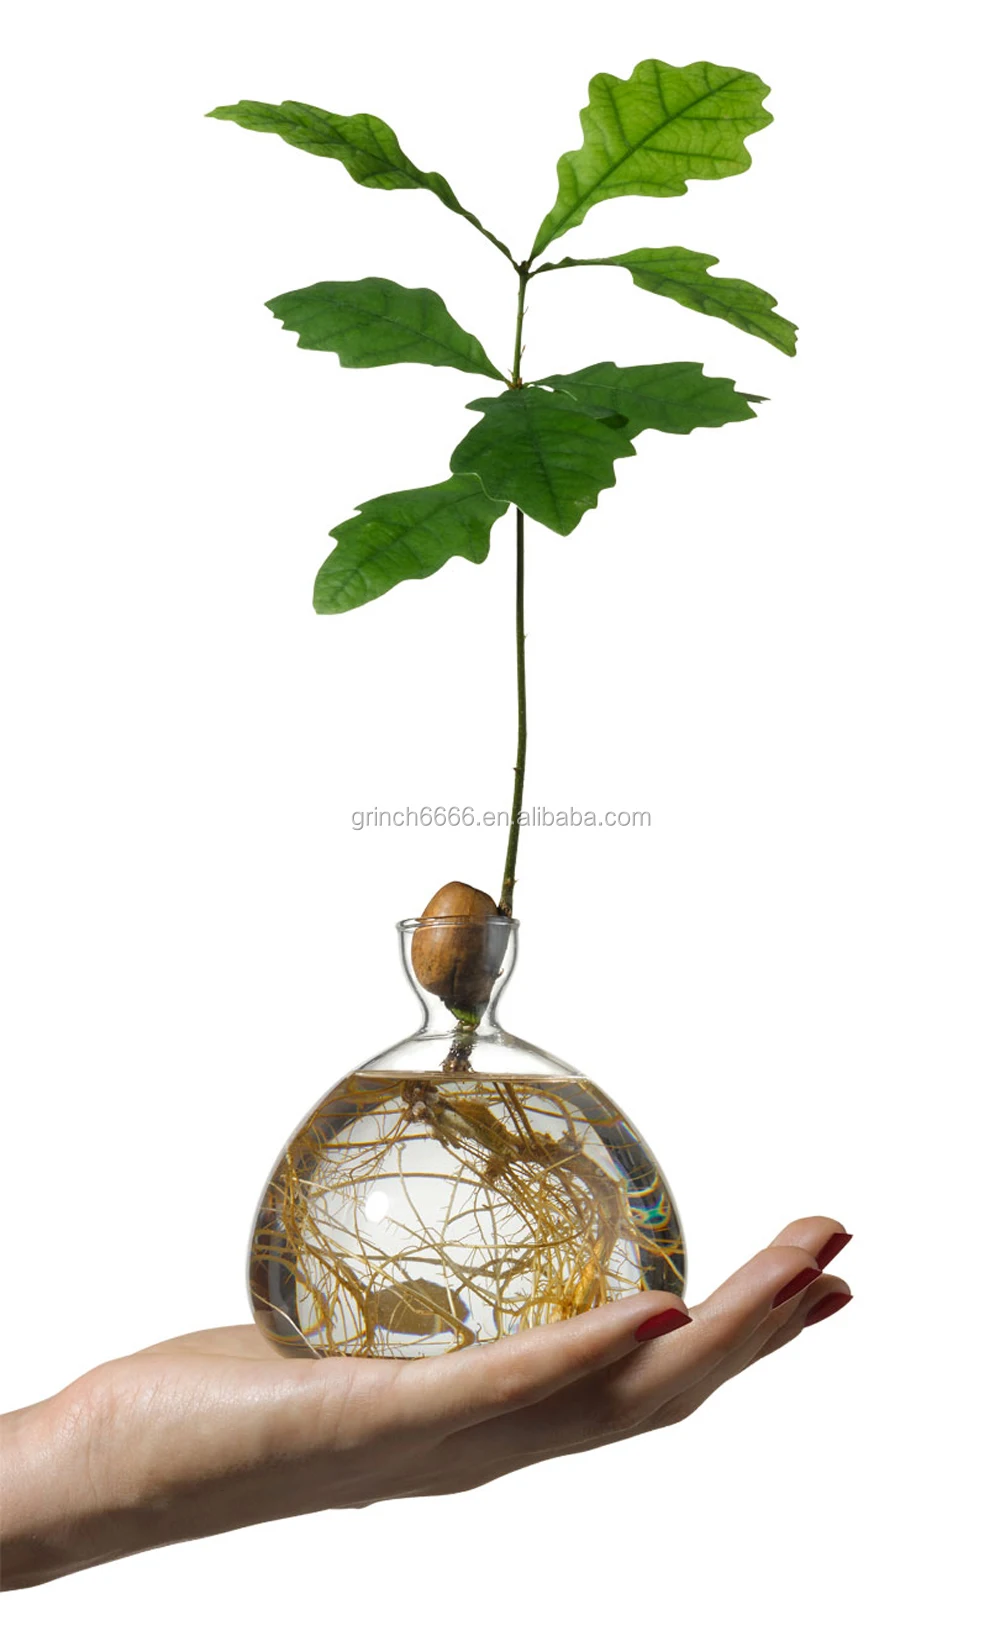 
Авокадо ваза желудь семян стартер Плантатор горшок авокадо дерево растет стеклянные вазы расти авокадо и дуб деревом в домашних условиях 